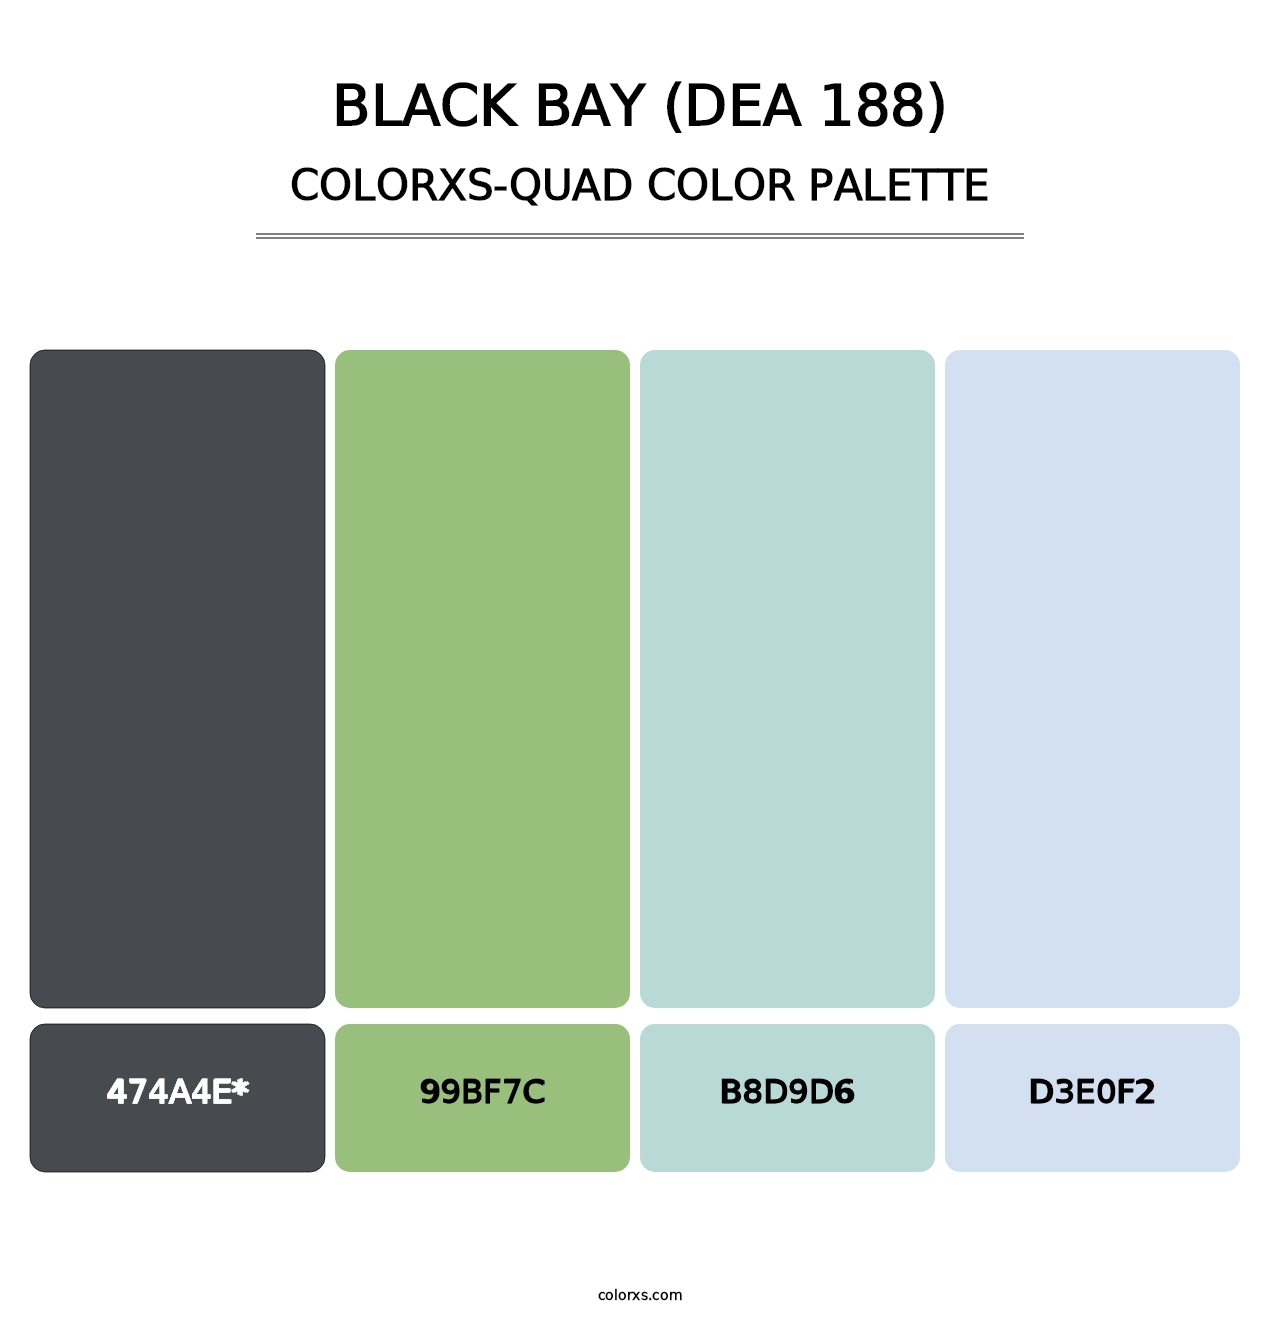 Black Bay (DEA 188) - Colorxs Quad Palette